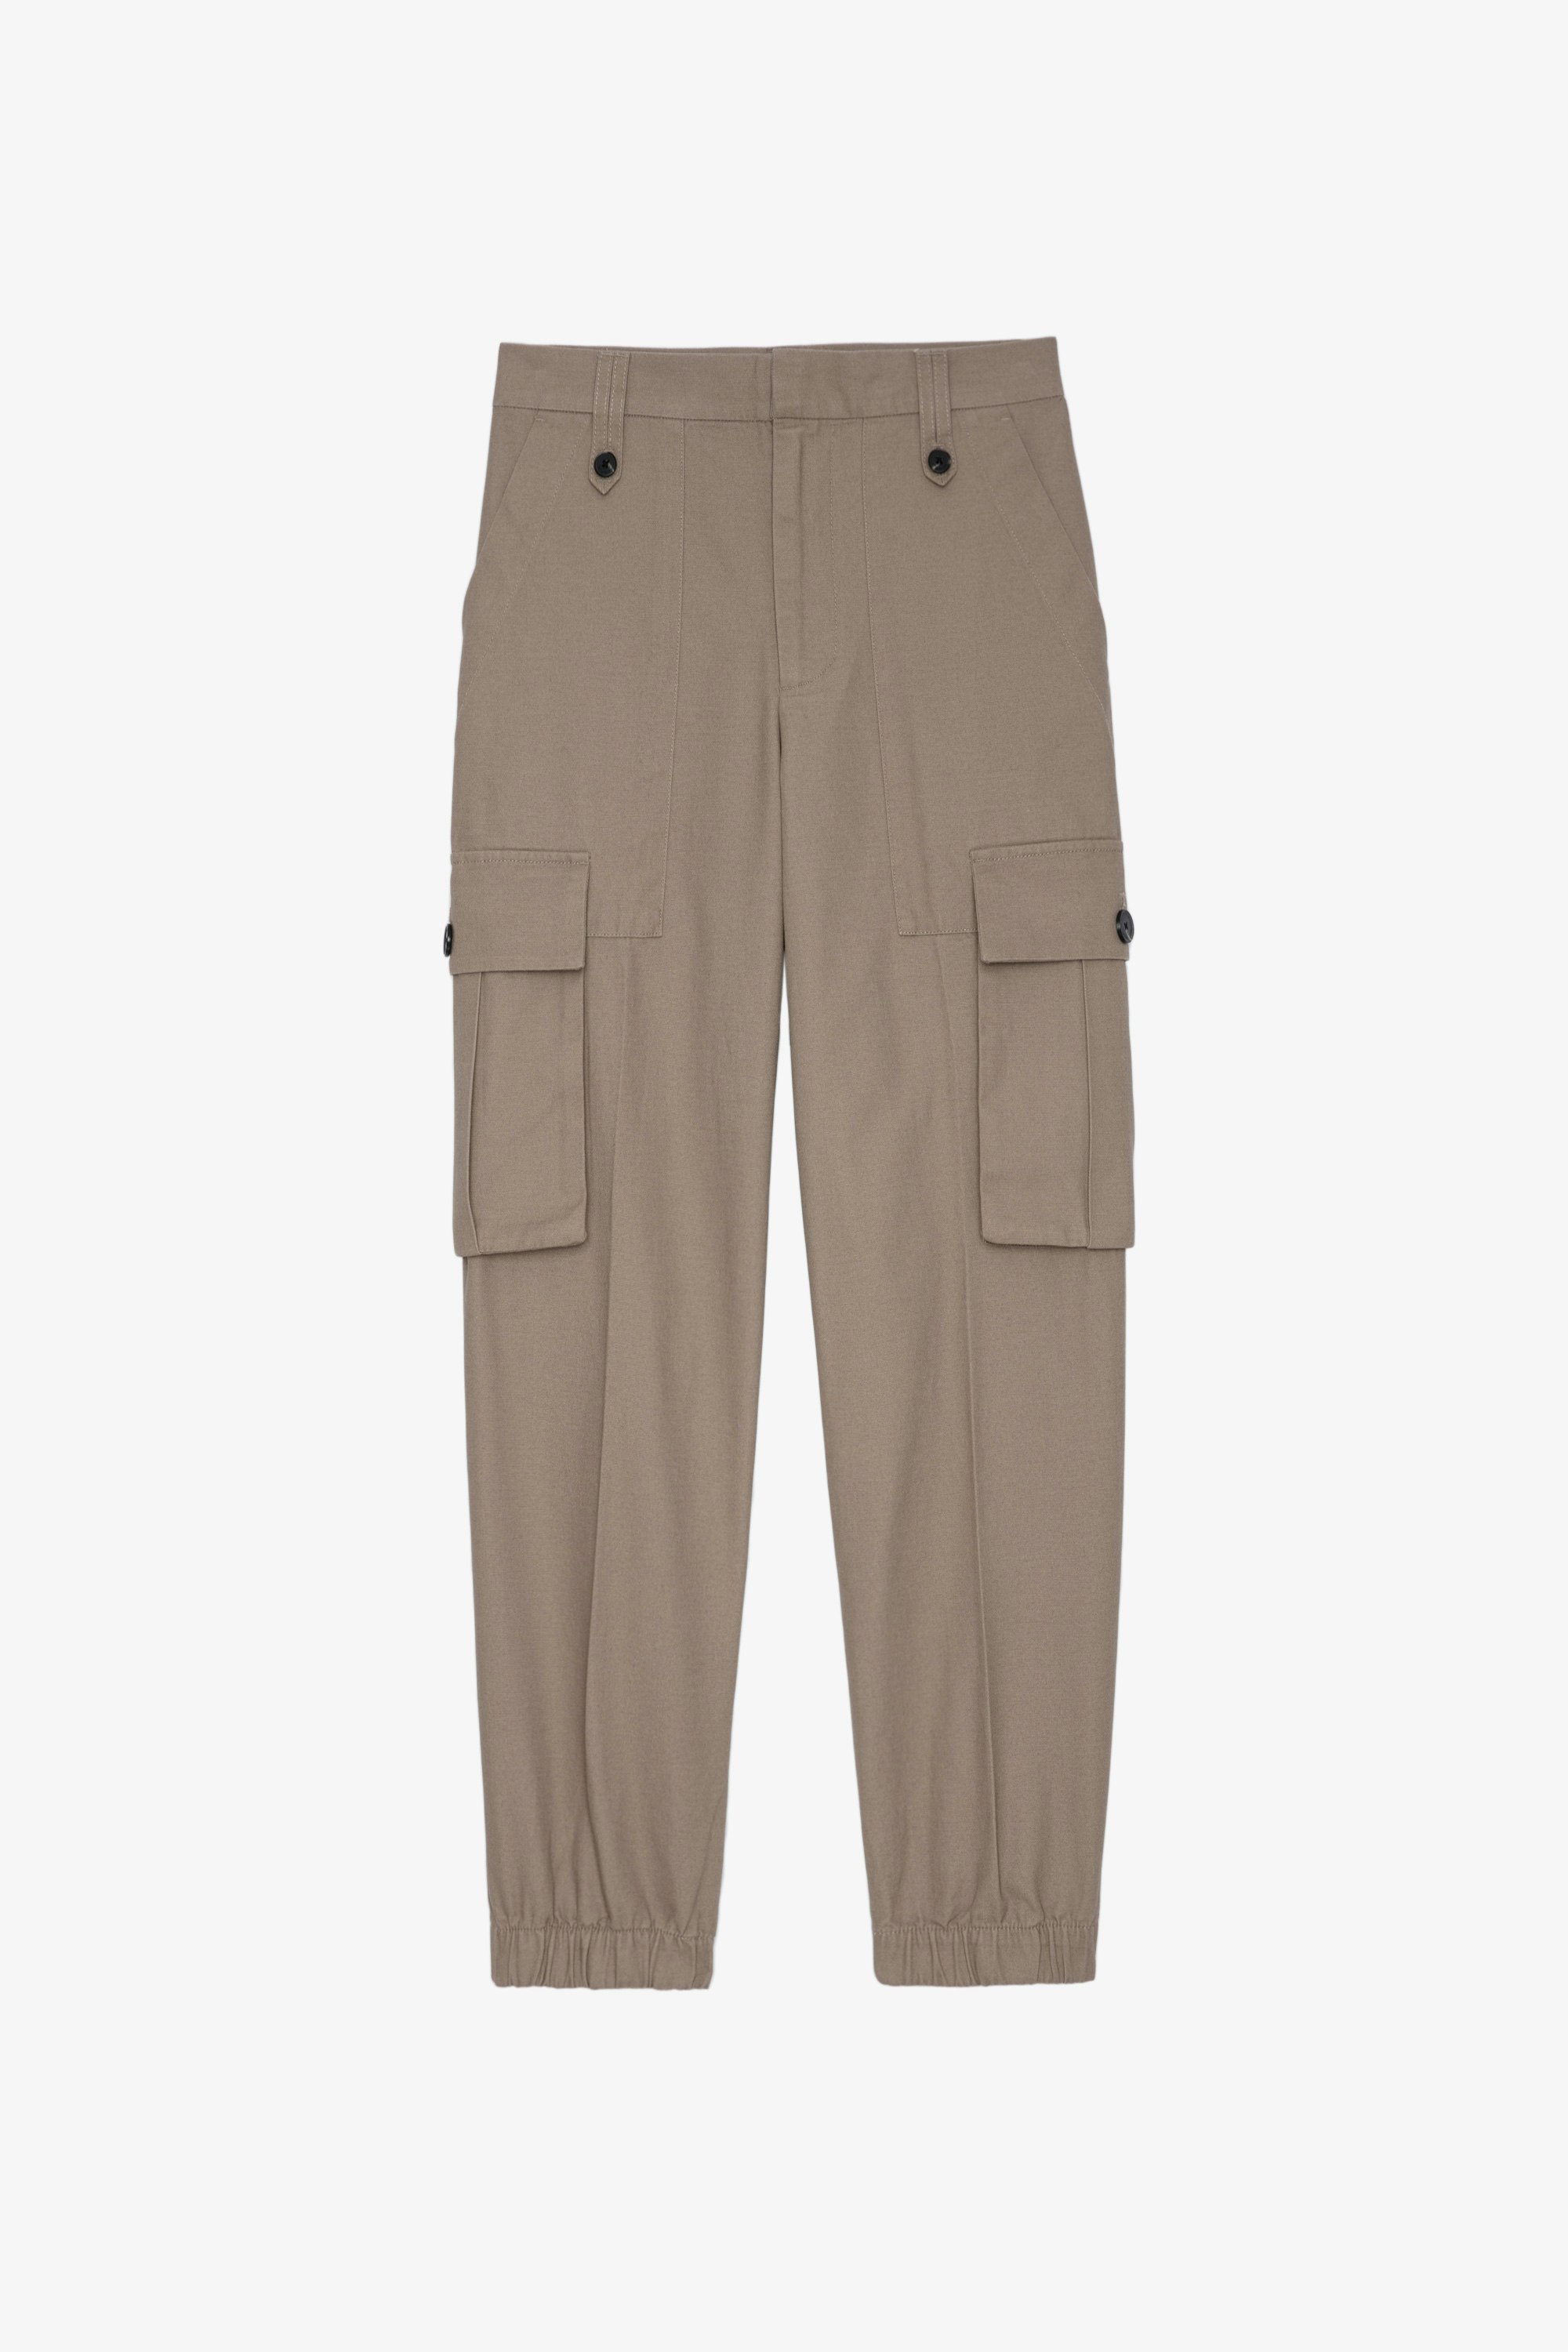 Pantaloni Pilote in tela Pantaloni in cotone color cognac con tasche cargo donna